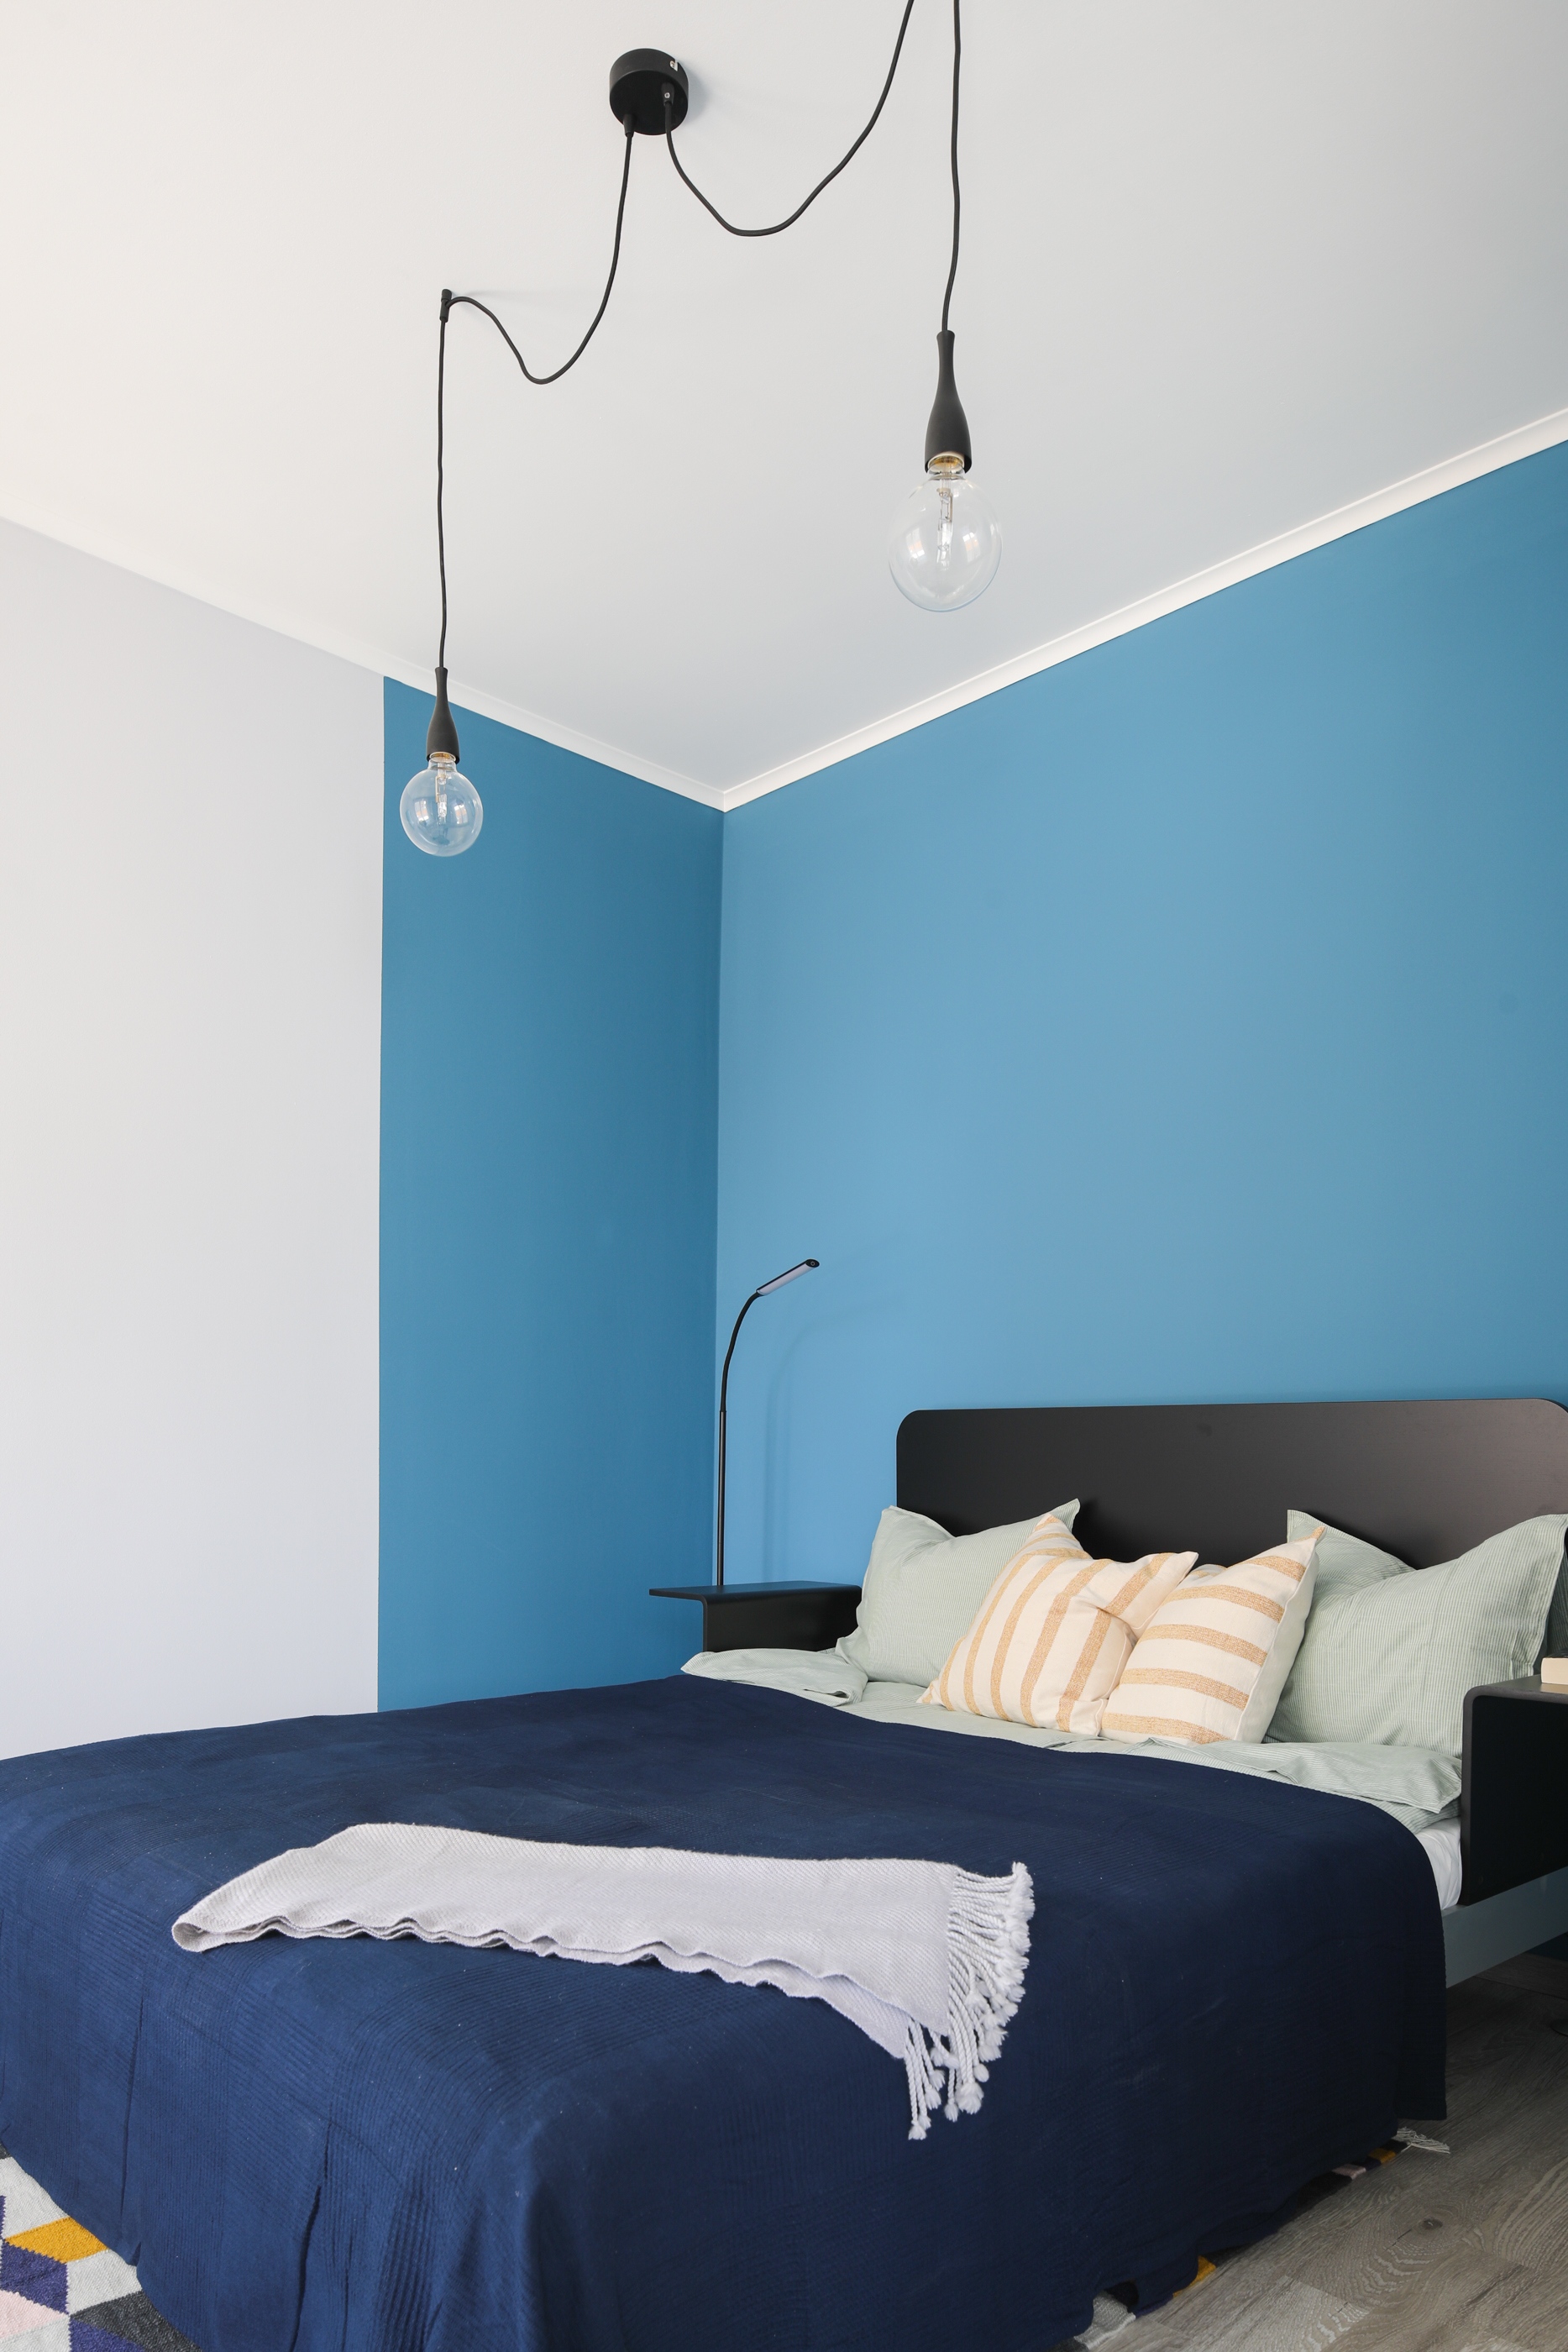 A sötétkék ágytakaróval higgadtabbá tett hálóban trükkös falfestés teszi még kuckósabbá a hangulatot – szintén a kék egy újabb árnyalatát vonultatva fel, ezúttal falfesték formájában.